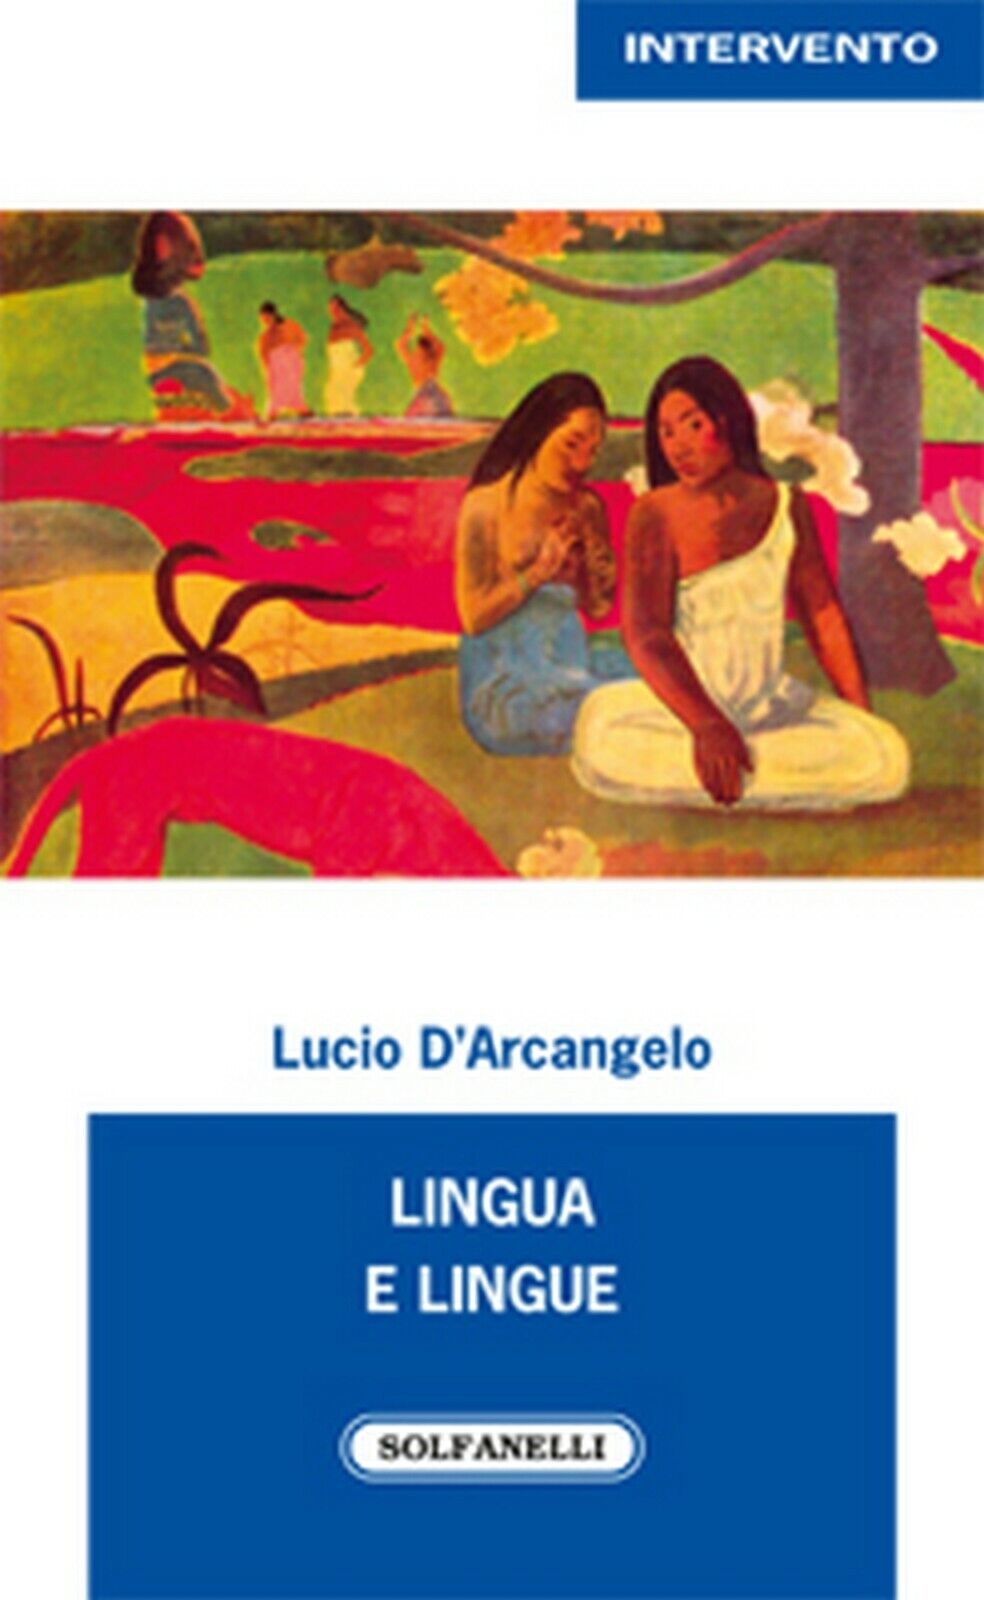 LINGUA E LINGUE  di Lucio d'Arcangelo,  Solfanelli Edizioni